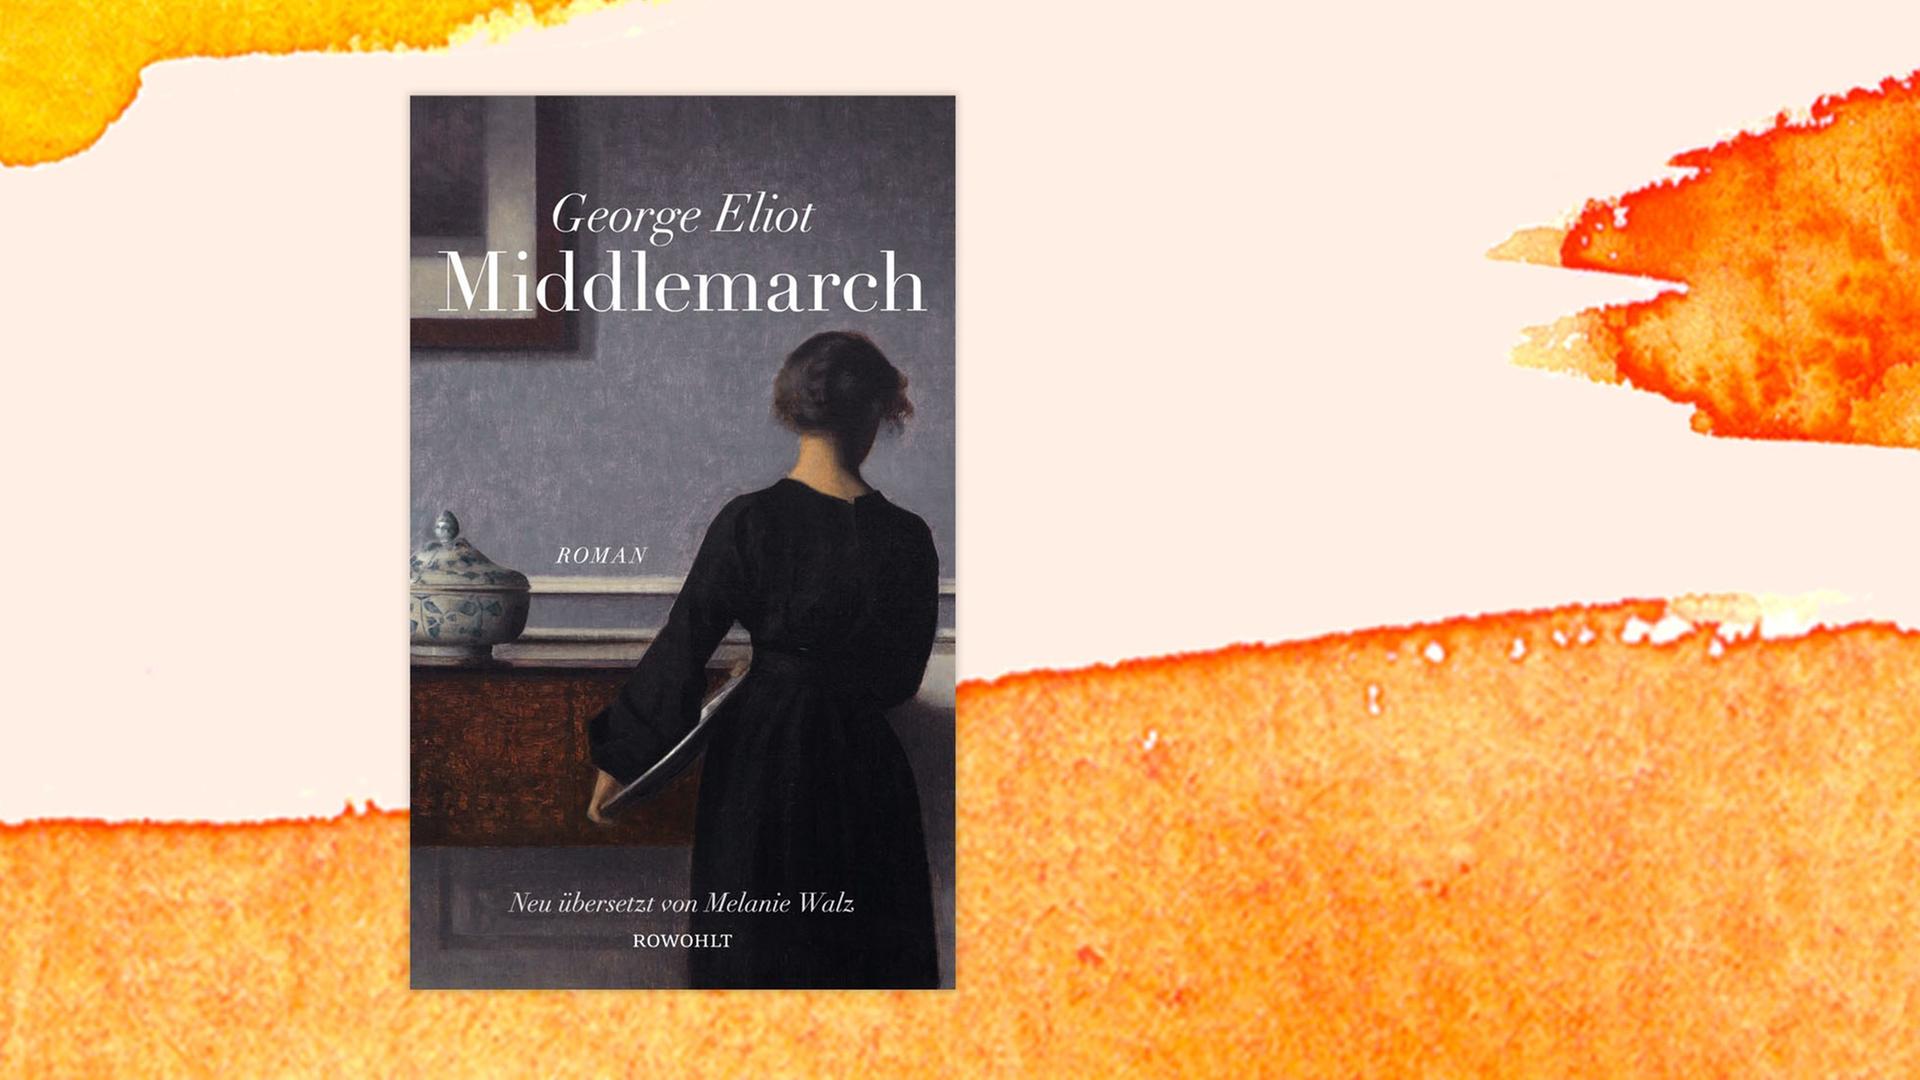 Das Bild zeigt das Buchcover von "Middlemarch" sowie einen aquarellierten Hintergrund.